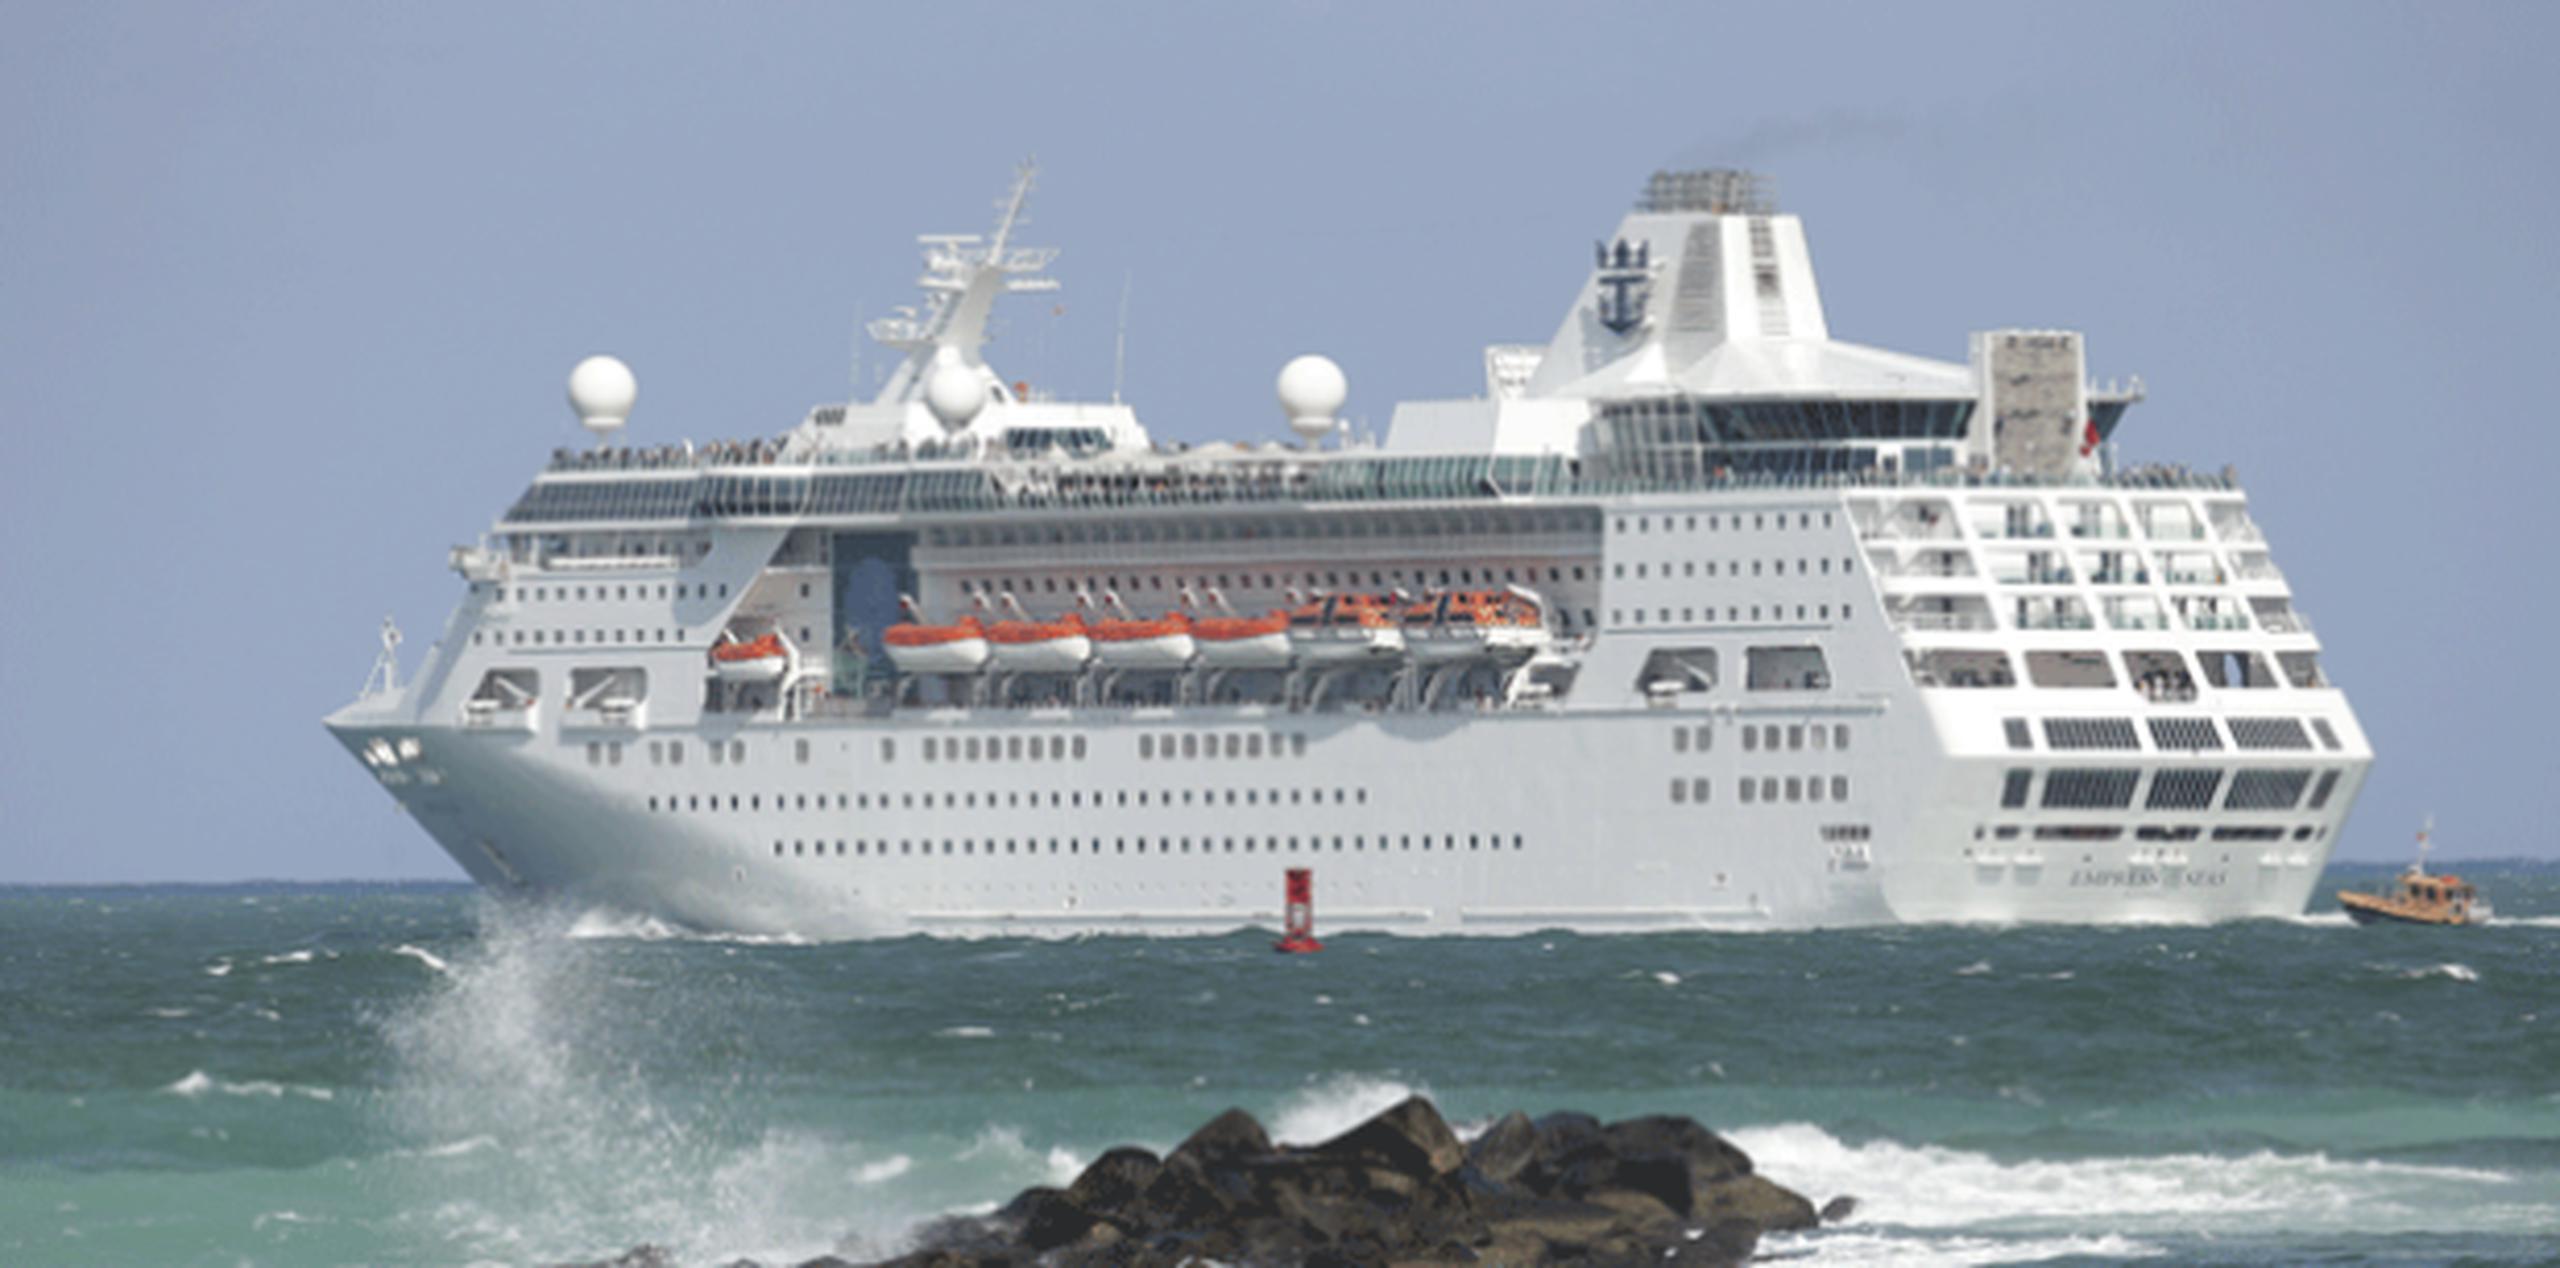 Cerca de mil personas que abordaron hoy el crucero Adventure of the Seas de la empresa Royal Caribbean, que realizó una travesía humanitaria desde Puerto Rico. (Archivo)